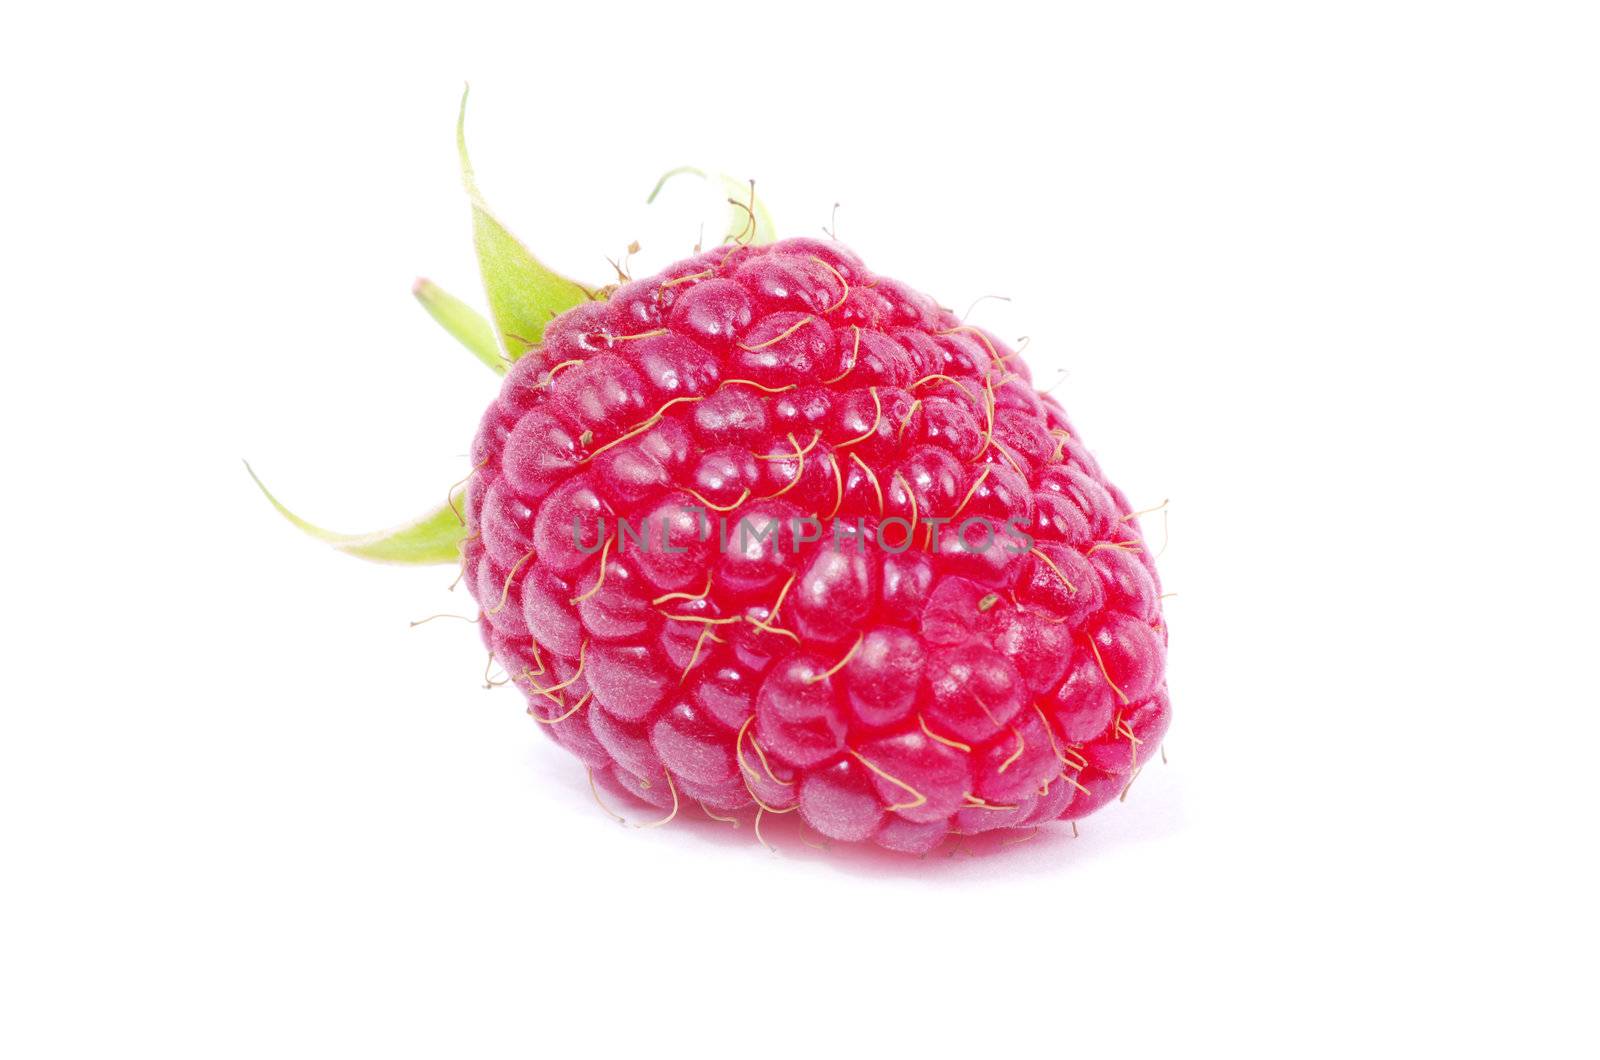  raspberry  by Pakhnyushchyy